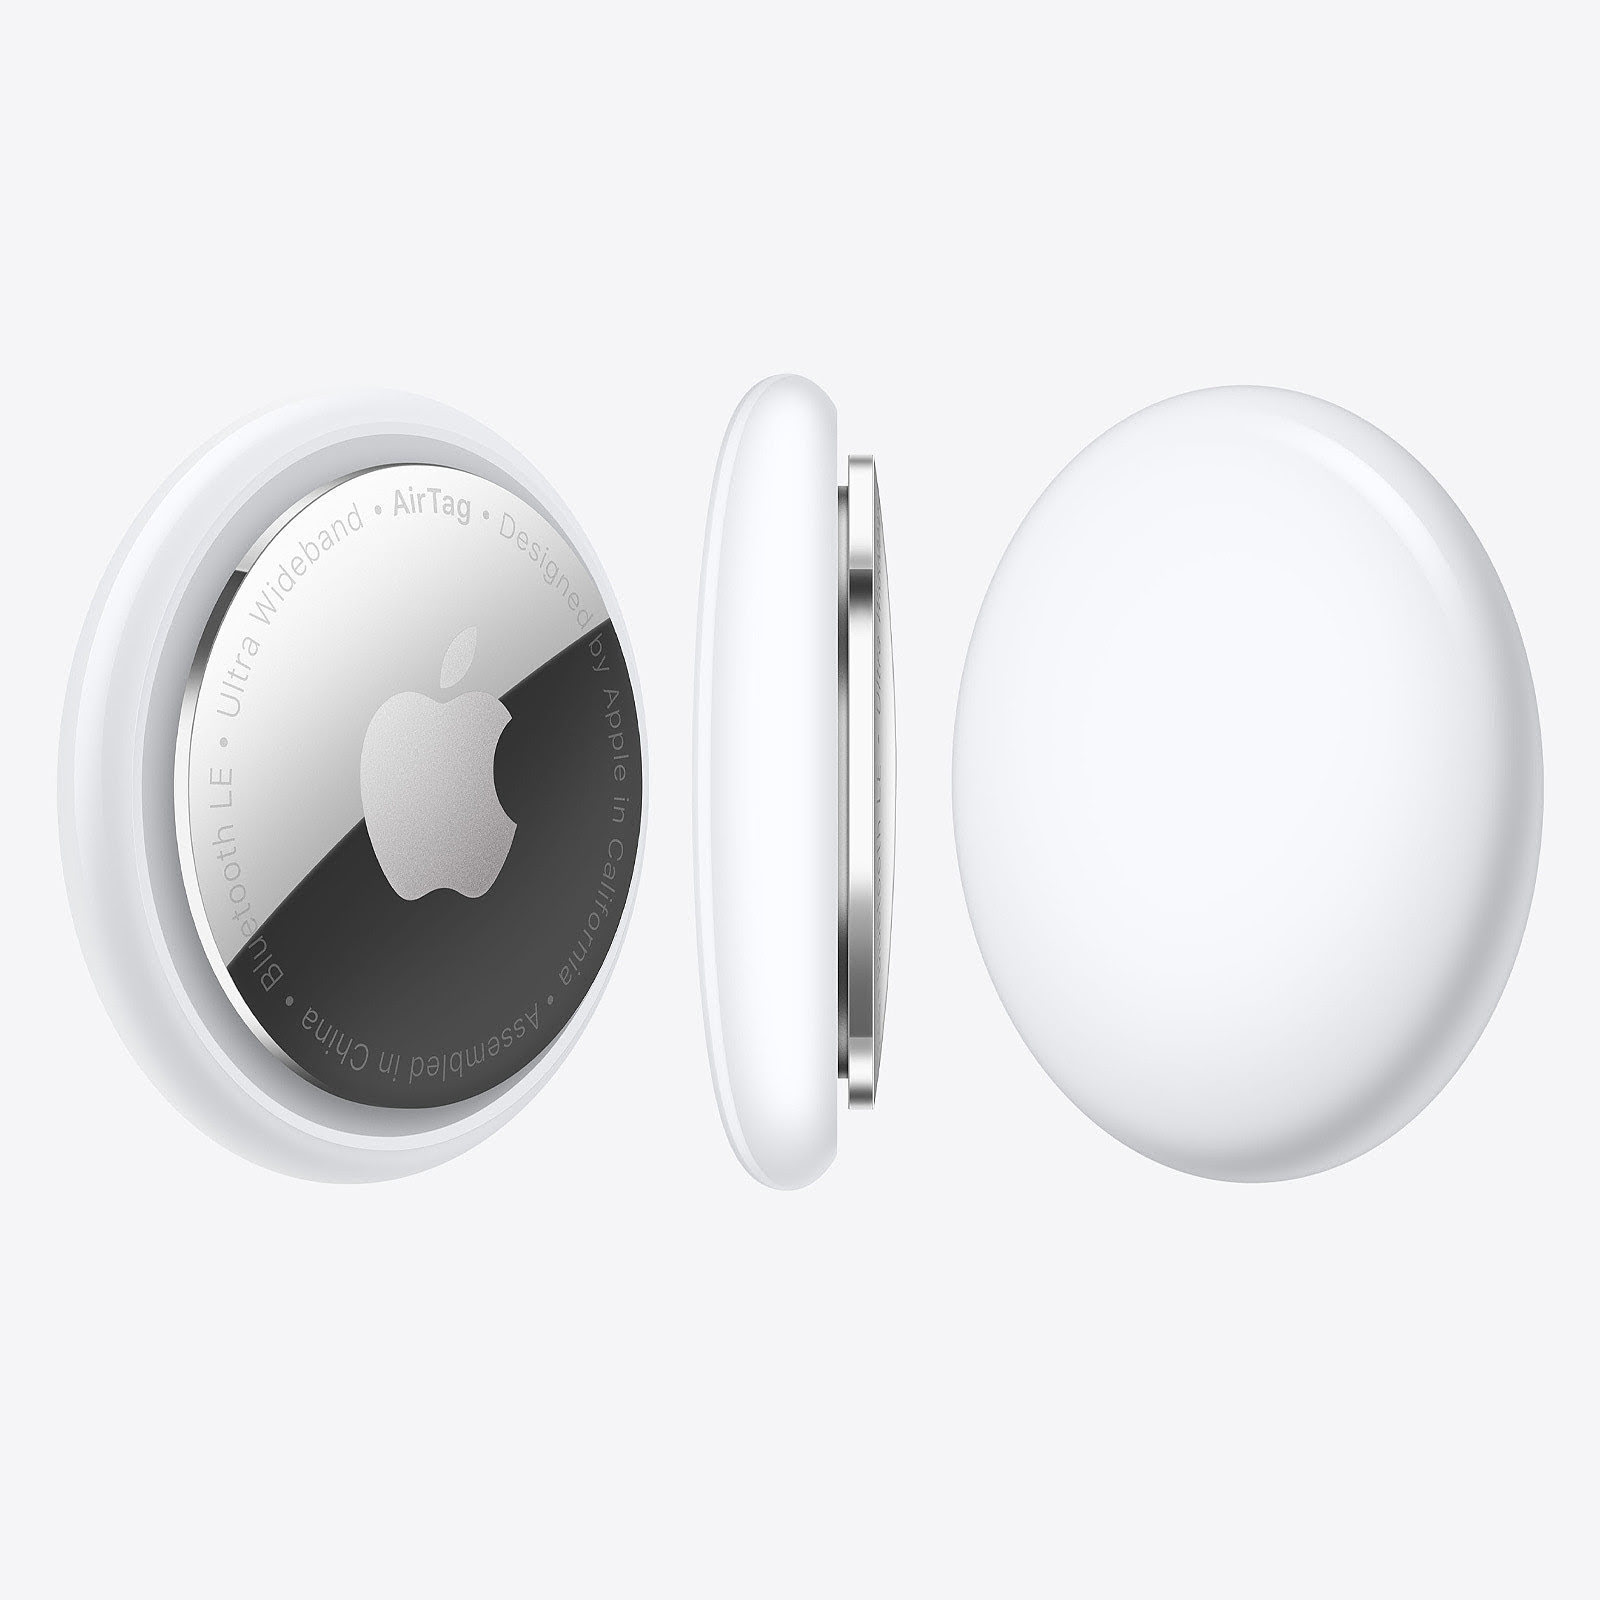 Tracker connecté Apple AirTag (Pack de 1) - Accessoire téléphonie Apple - 1